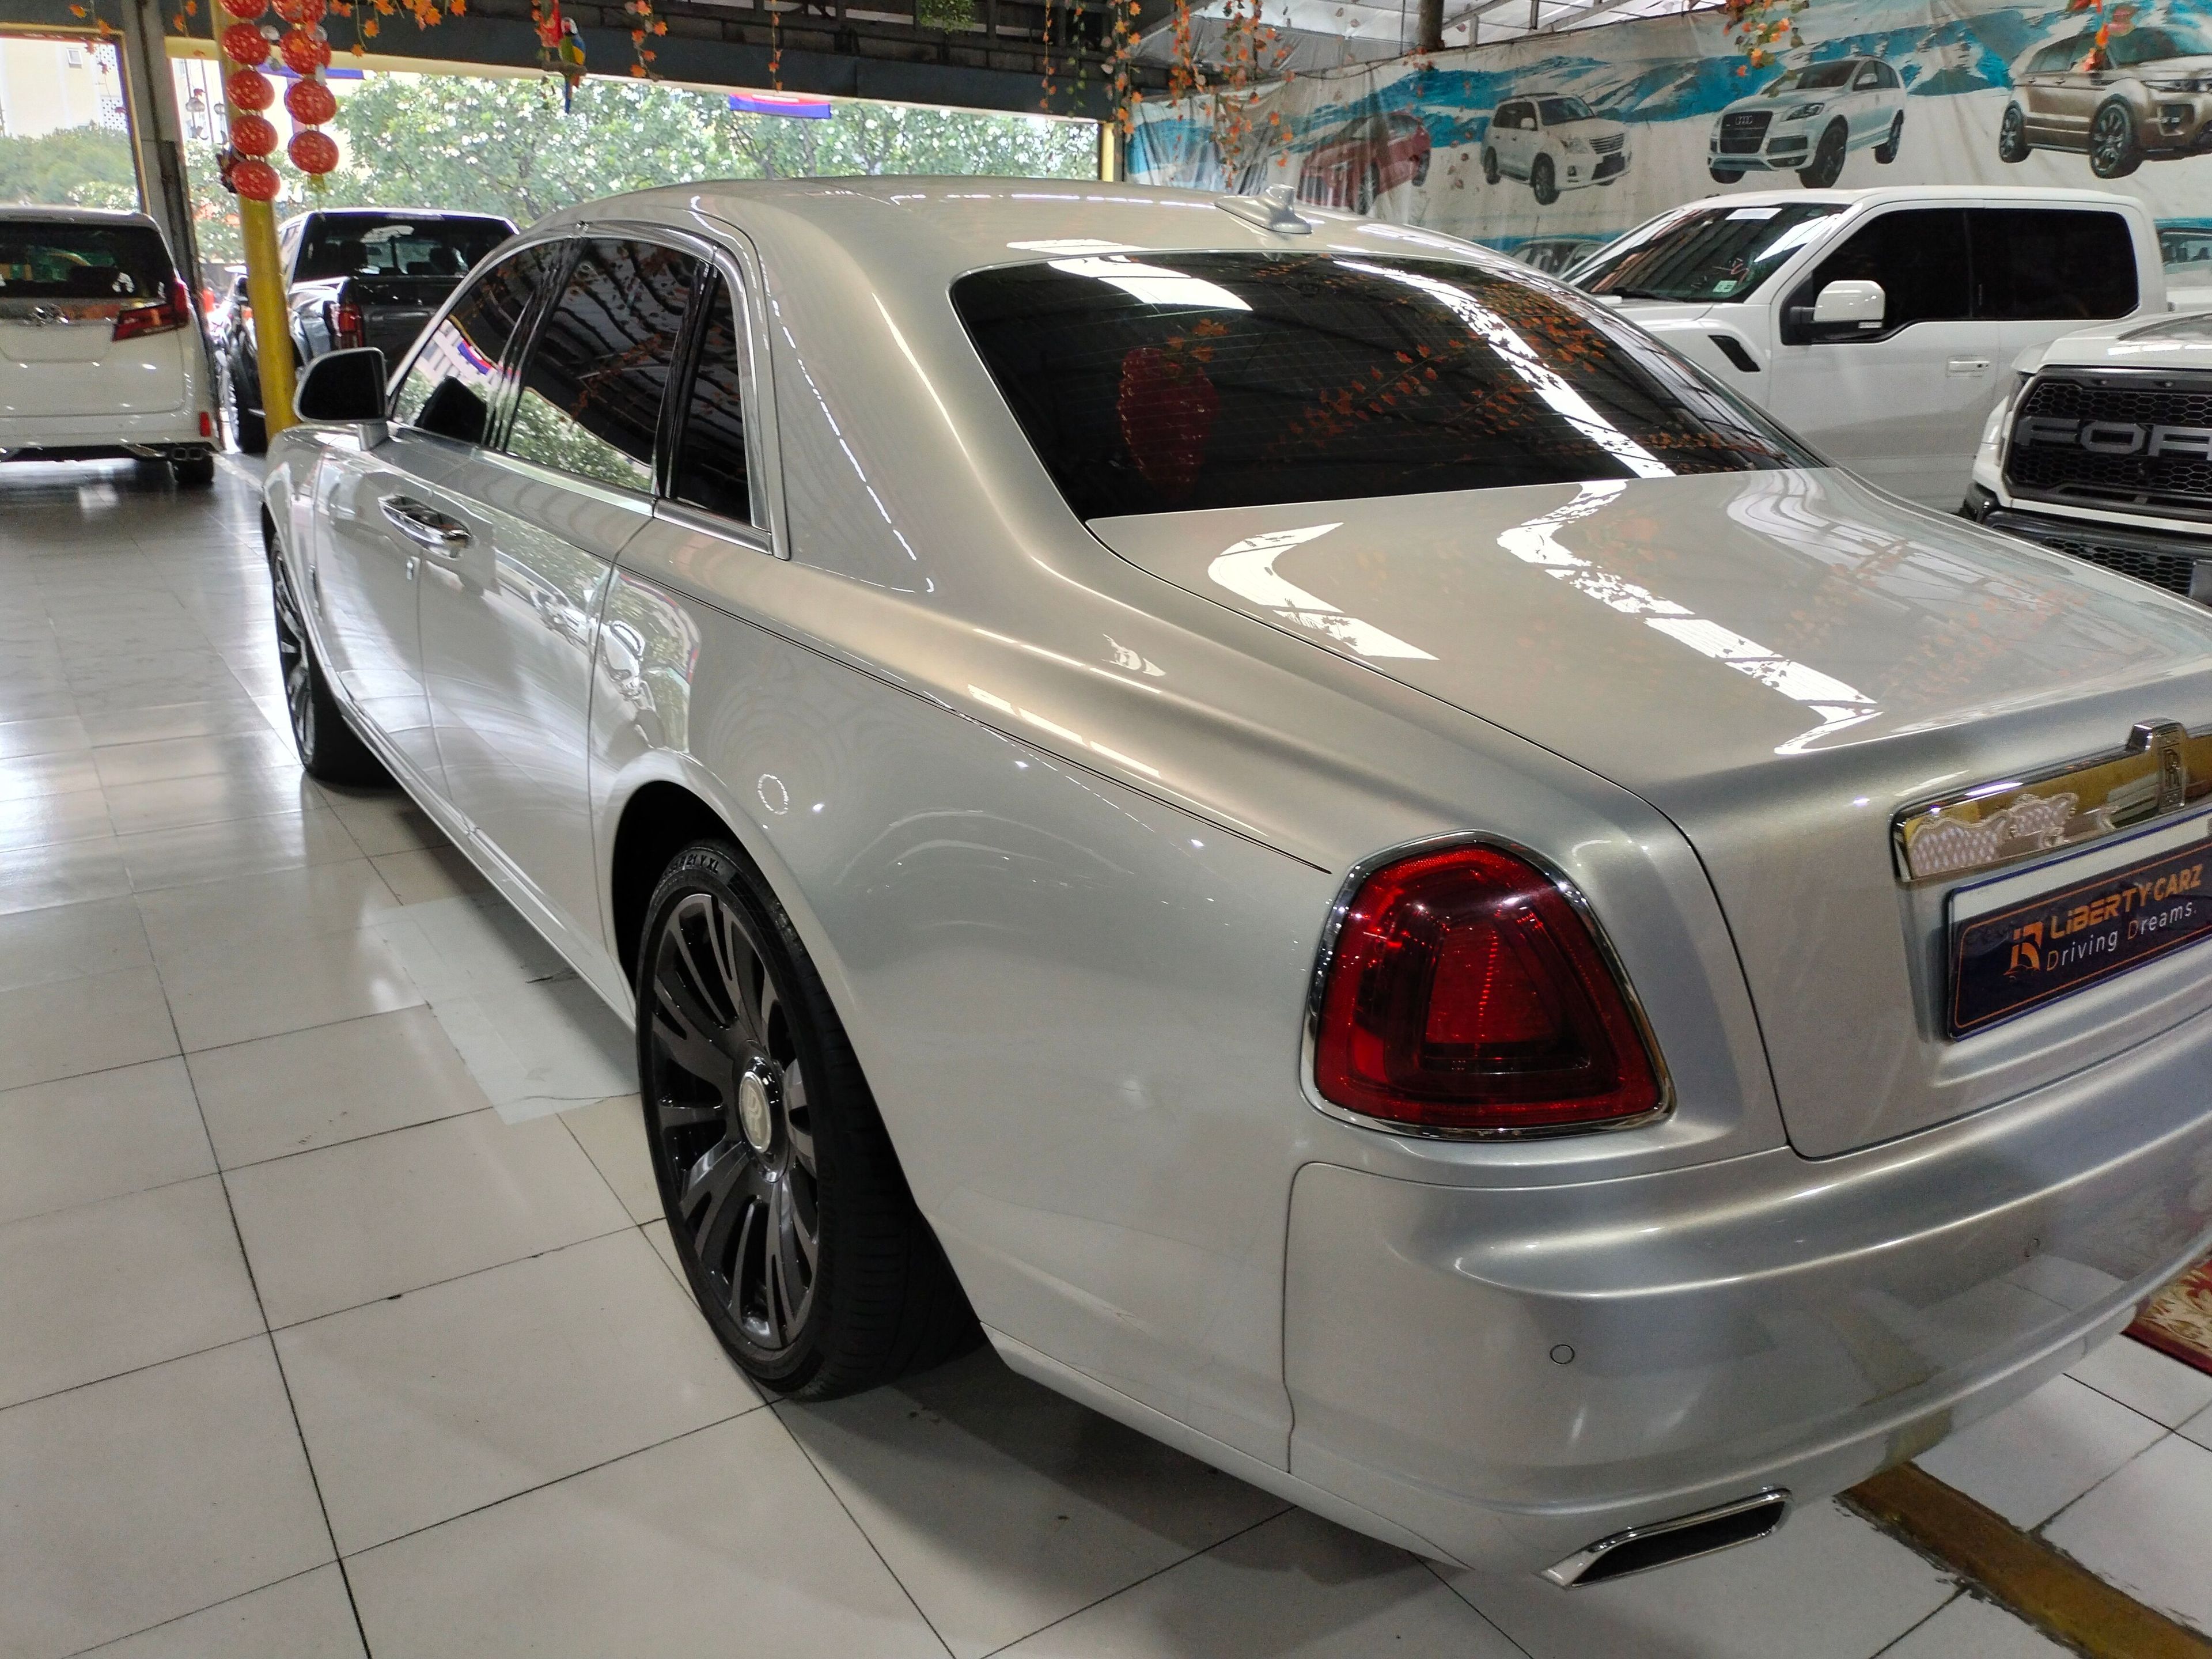 Rolls-Royce Ghost 2015